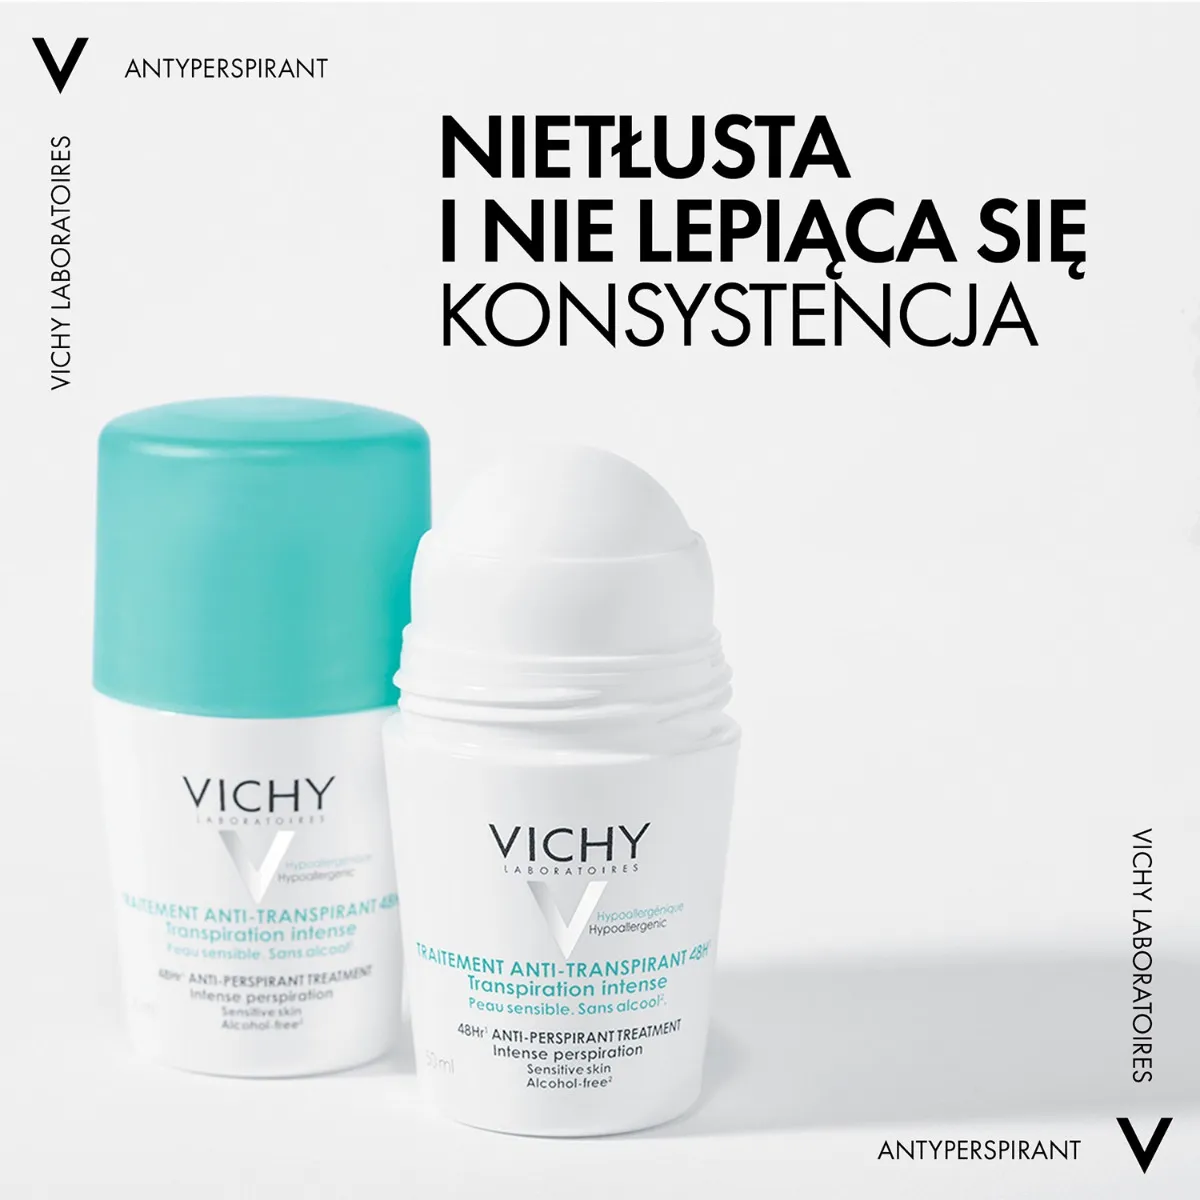 Vichy Traitement Anti-Traspirant 48h Antyperspirant w kulce przeciw intensywnemu poceniu, 50 ml 